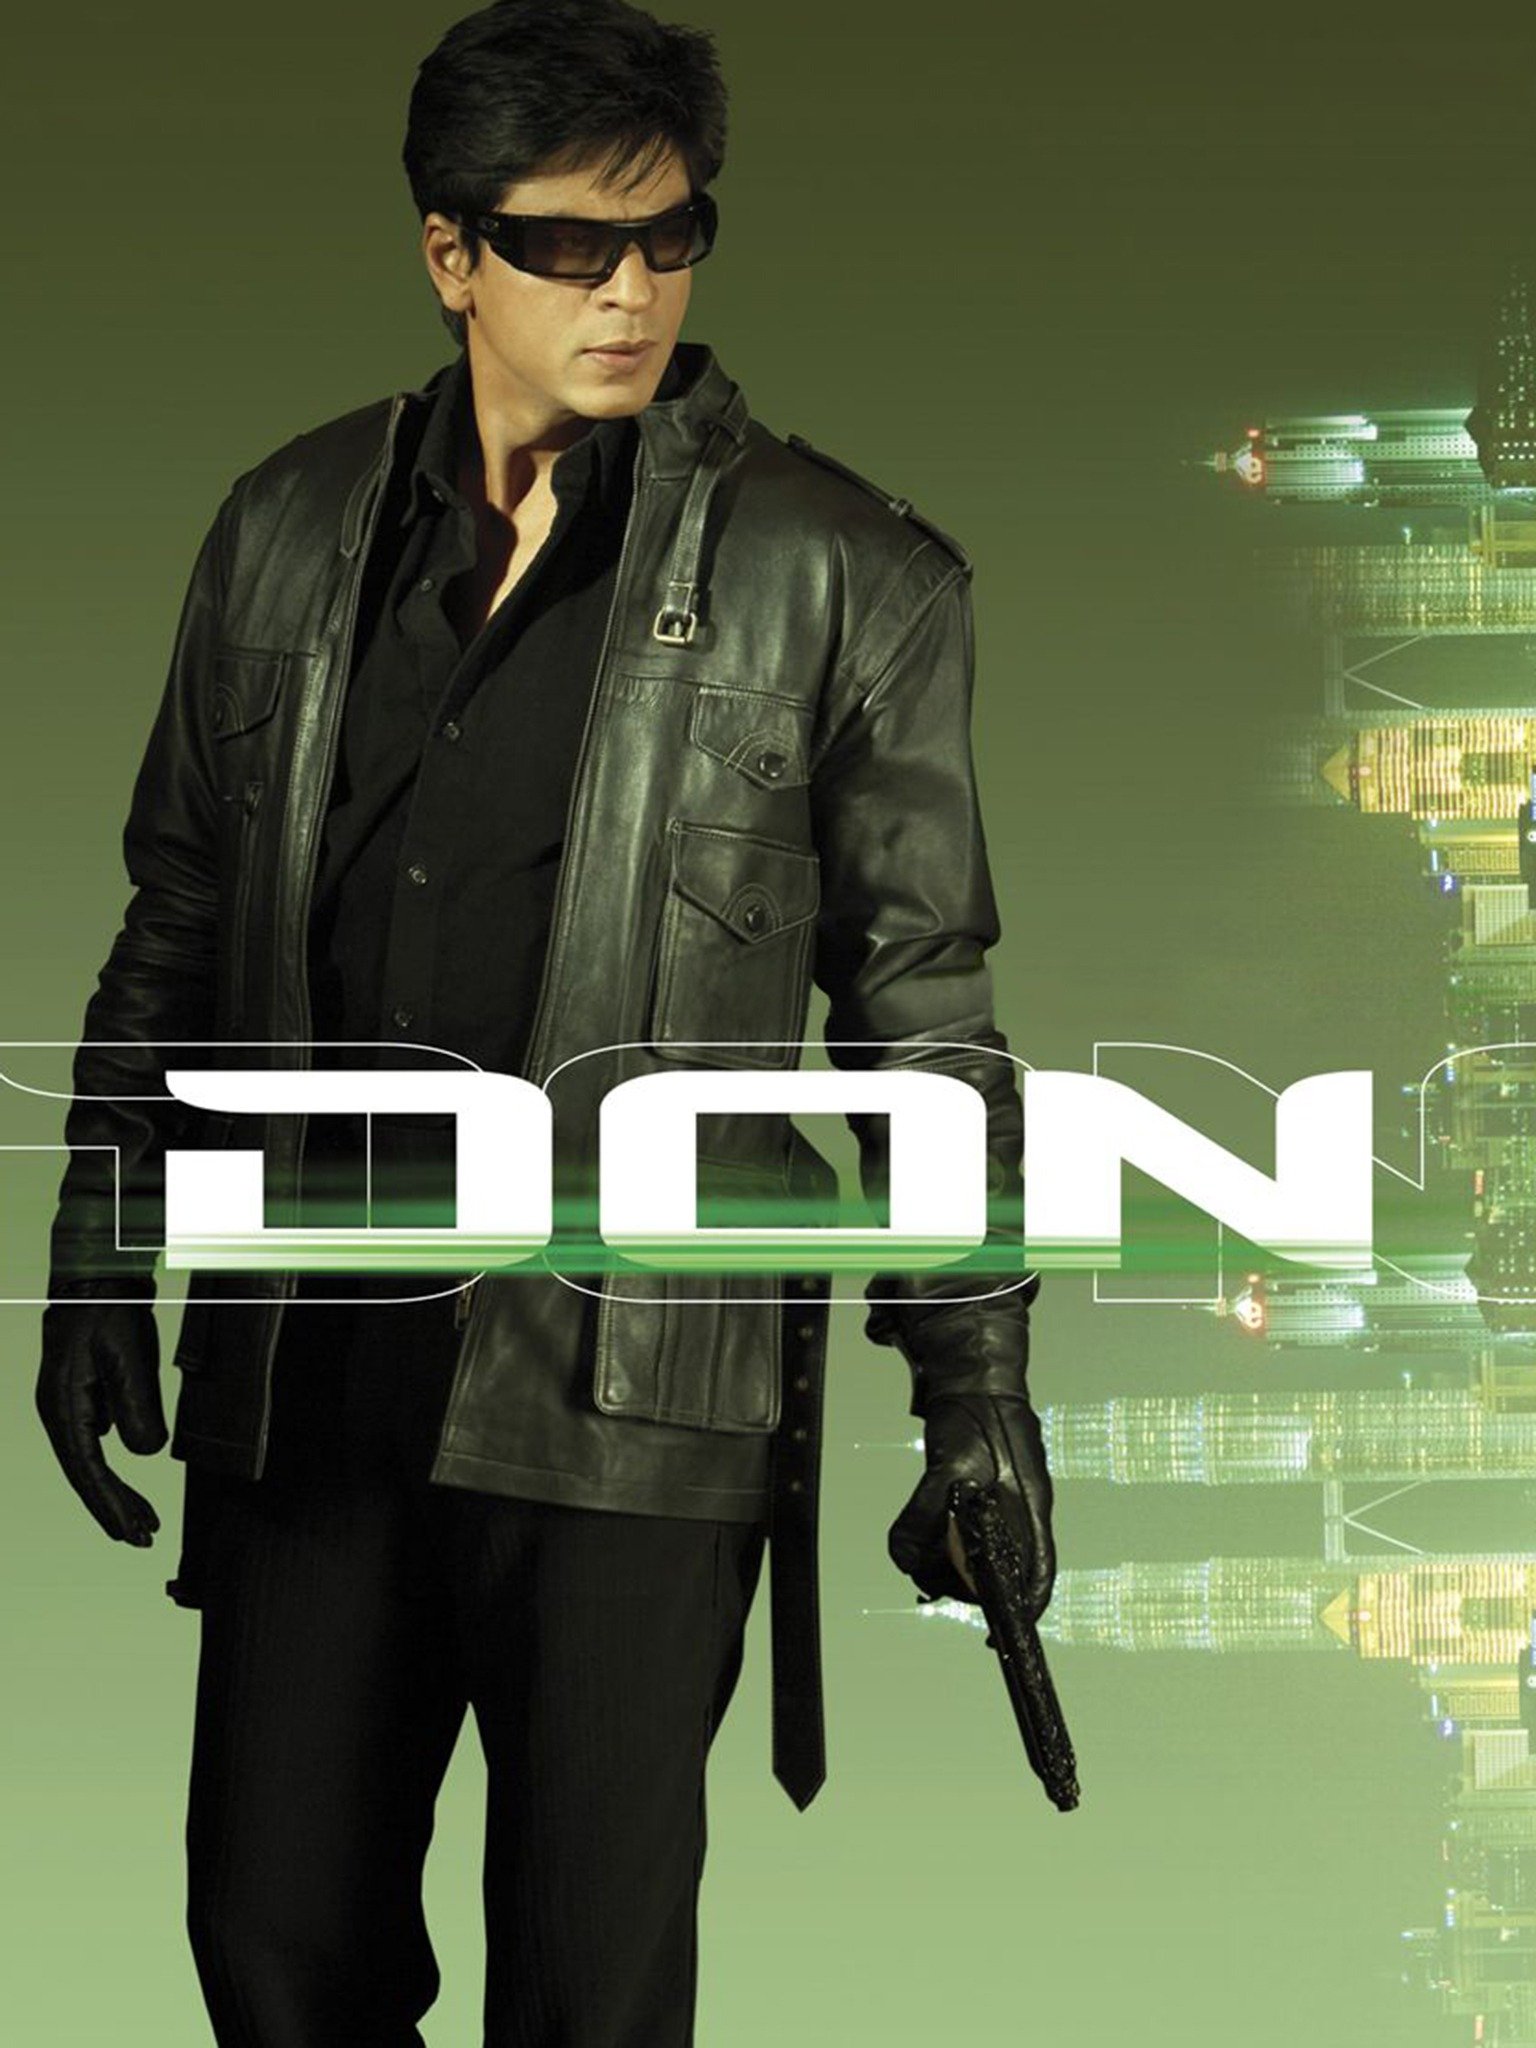 Don [Sub-ITA] [HD] (2006)